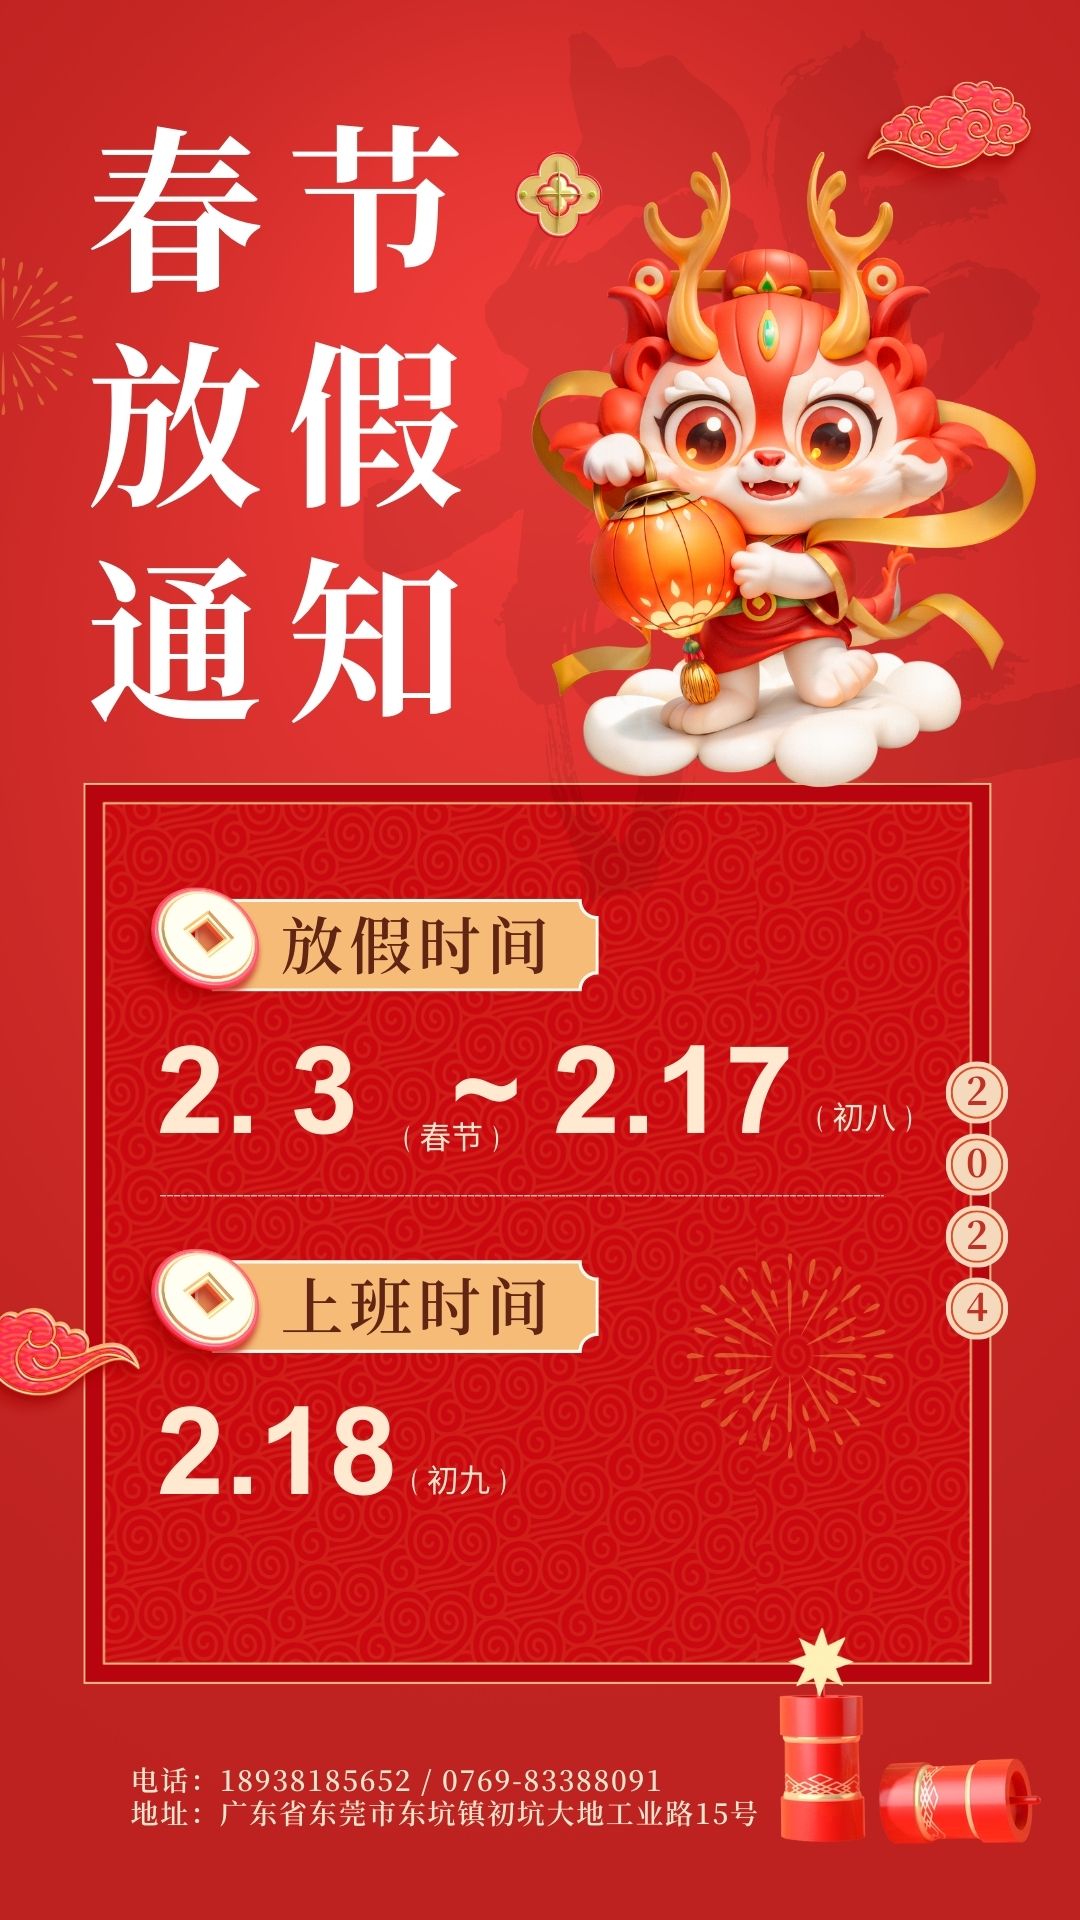 红橙色3D立体春节放假通知手机海报.jpg